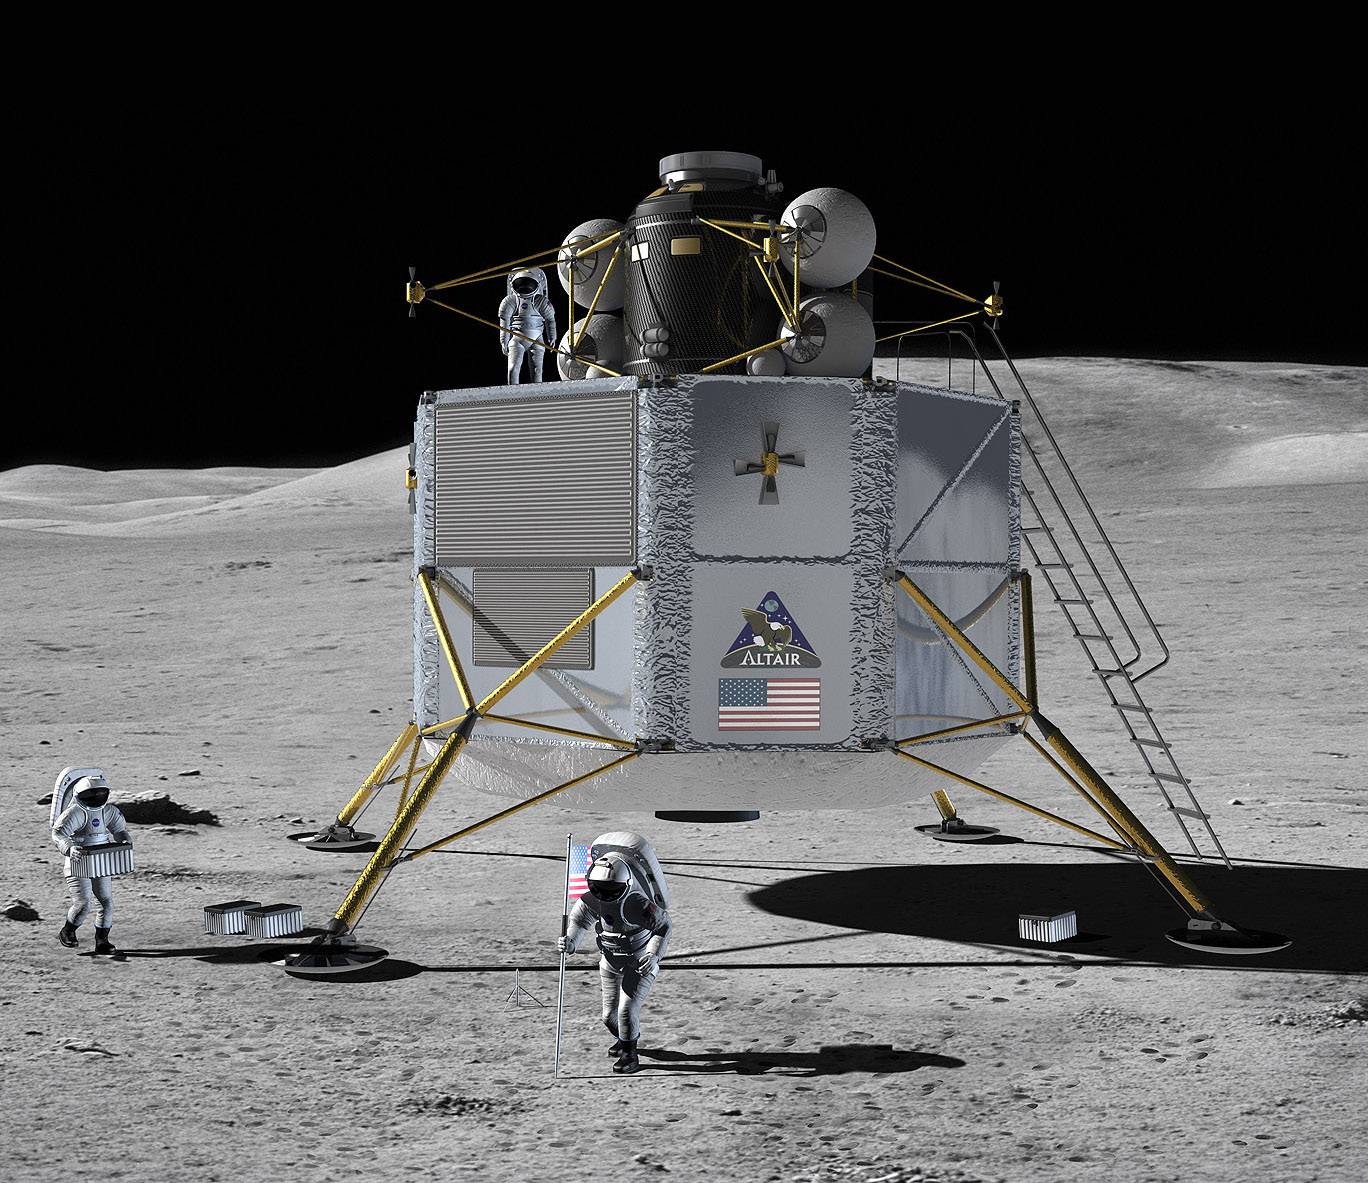 Пилотируемый полет на луну. Lunar Lander космический аппарат. Альтаир посадочный модуль. Лунный посадочный модуль Альтаир. Altair Lunar Lander.